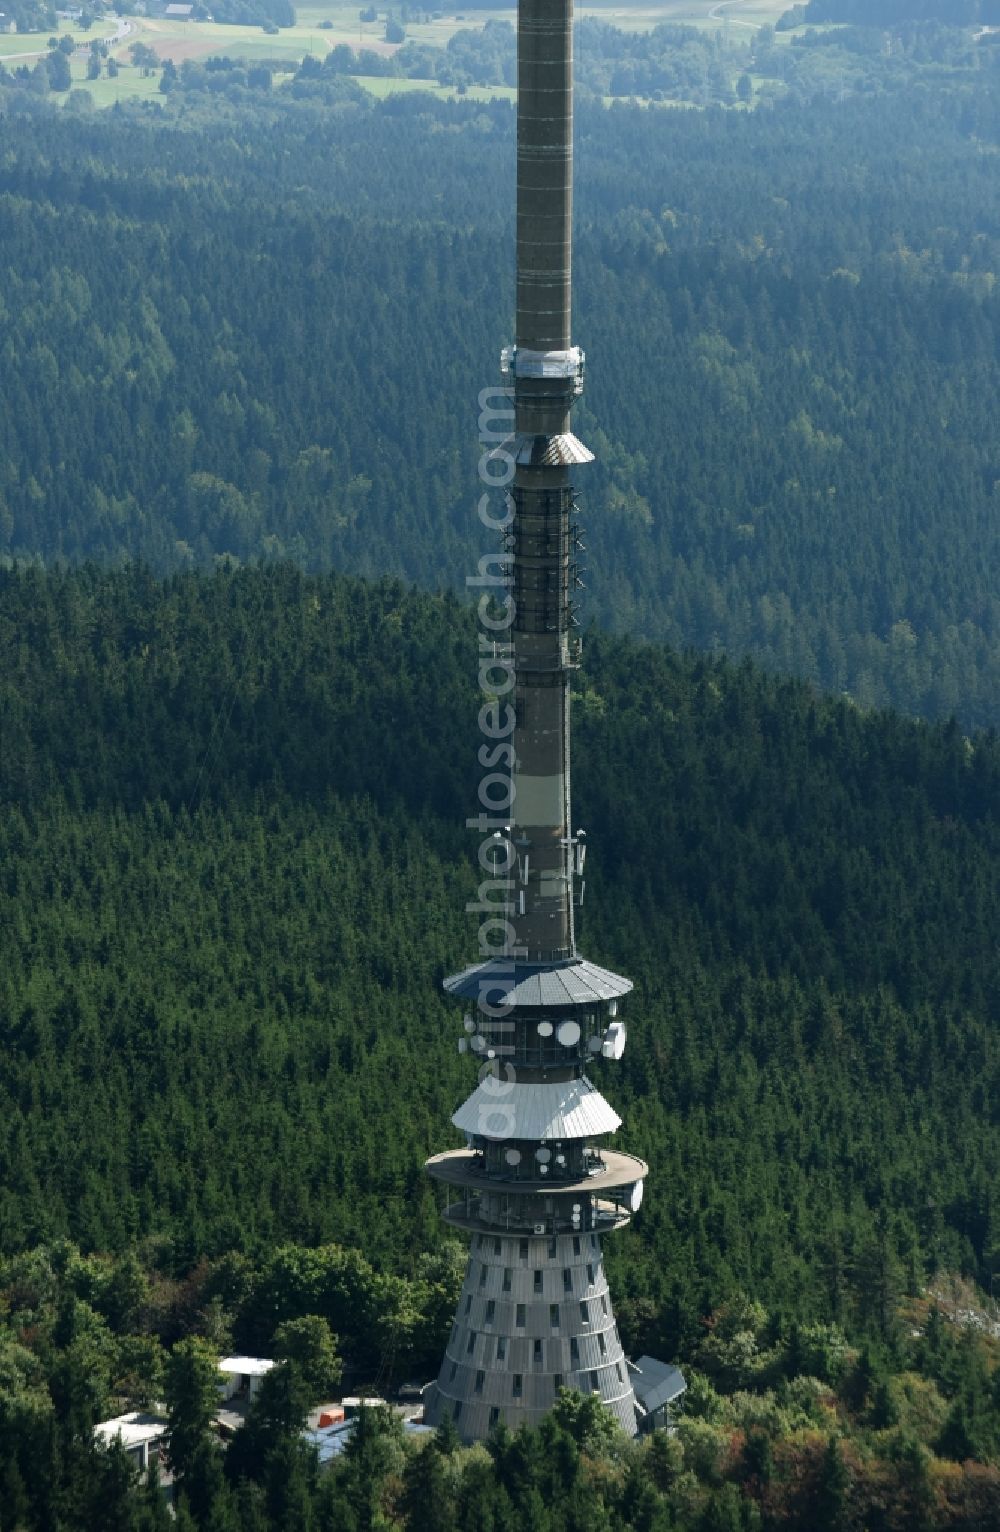 Bischofsgrün from above - Antenna and transmission tower radio mast Sender Ochsenkopf in Bischofsgruen in the state Bavaria